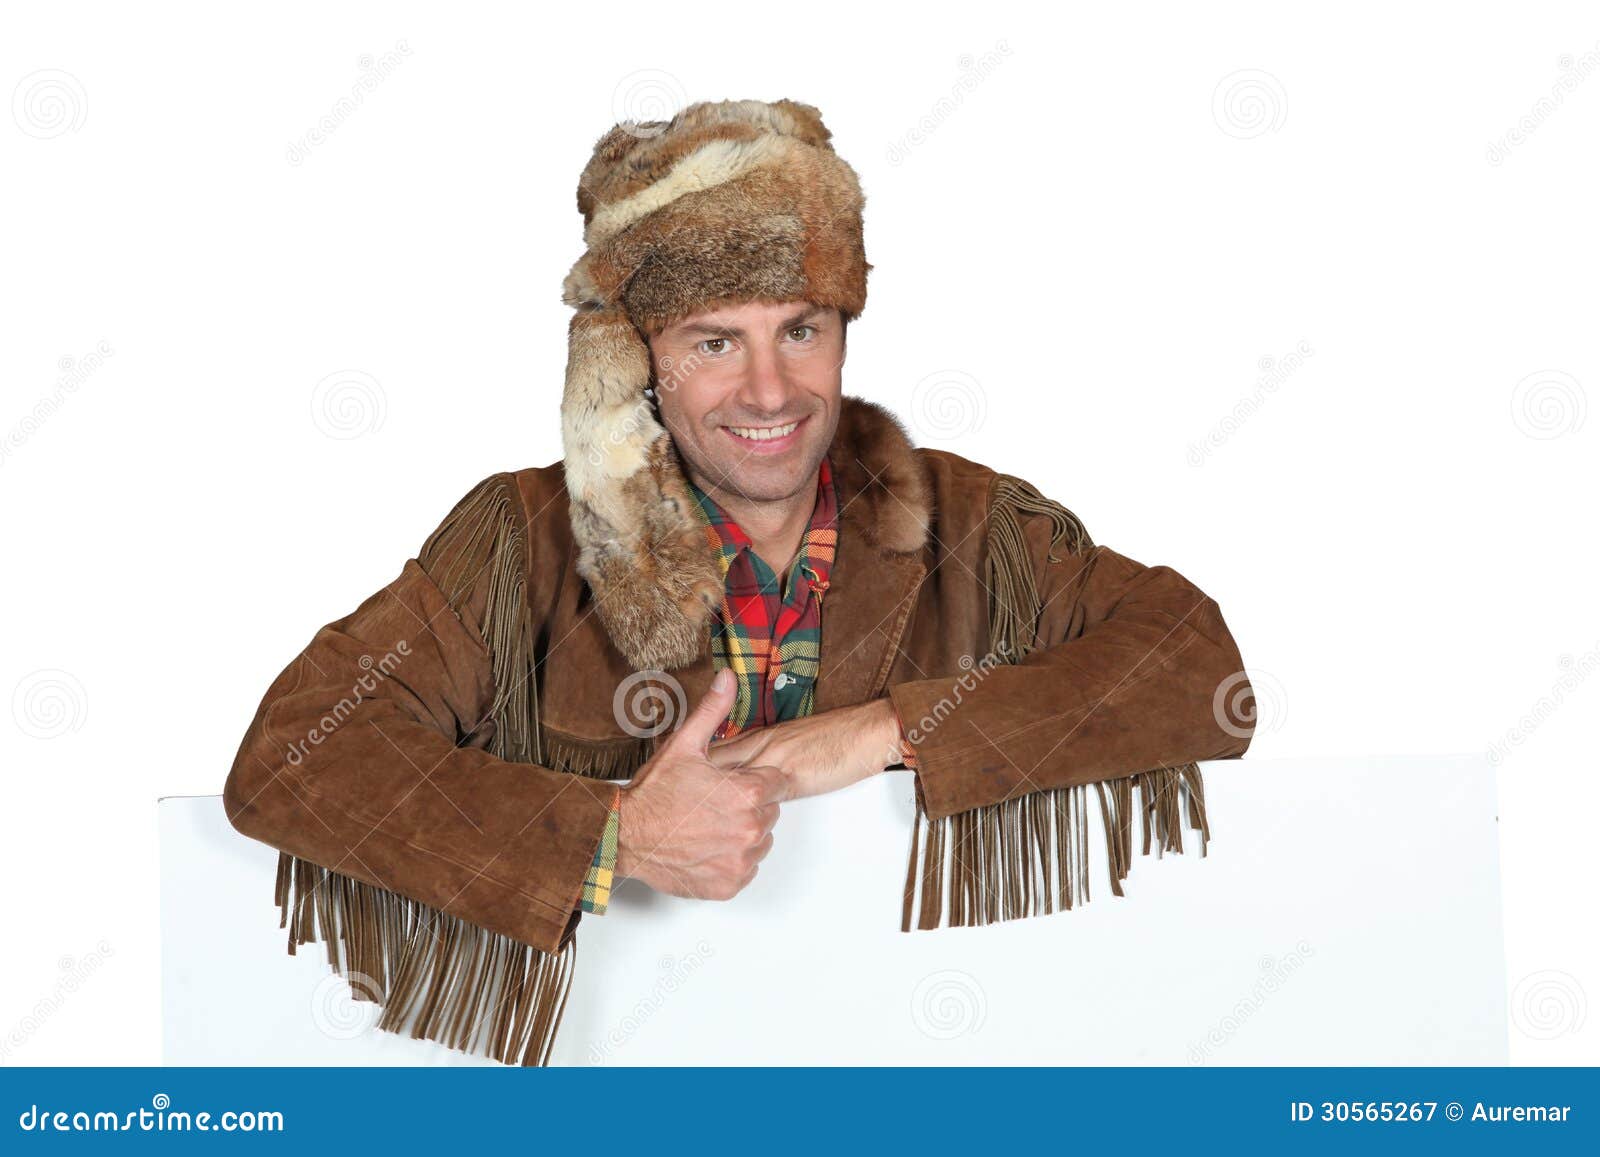 man in trapper costume